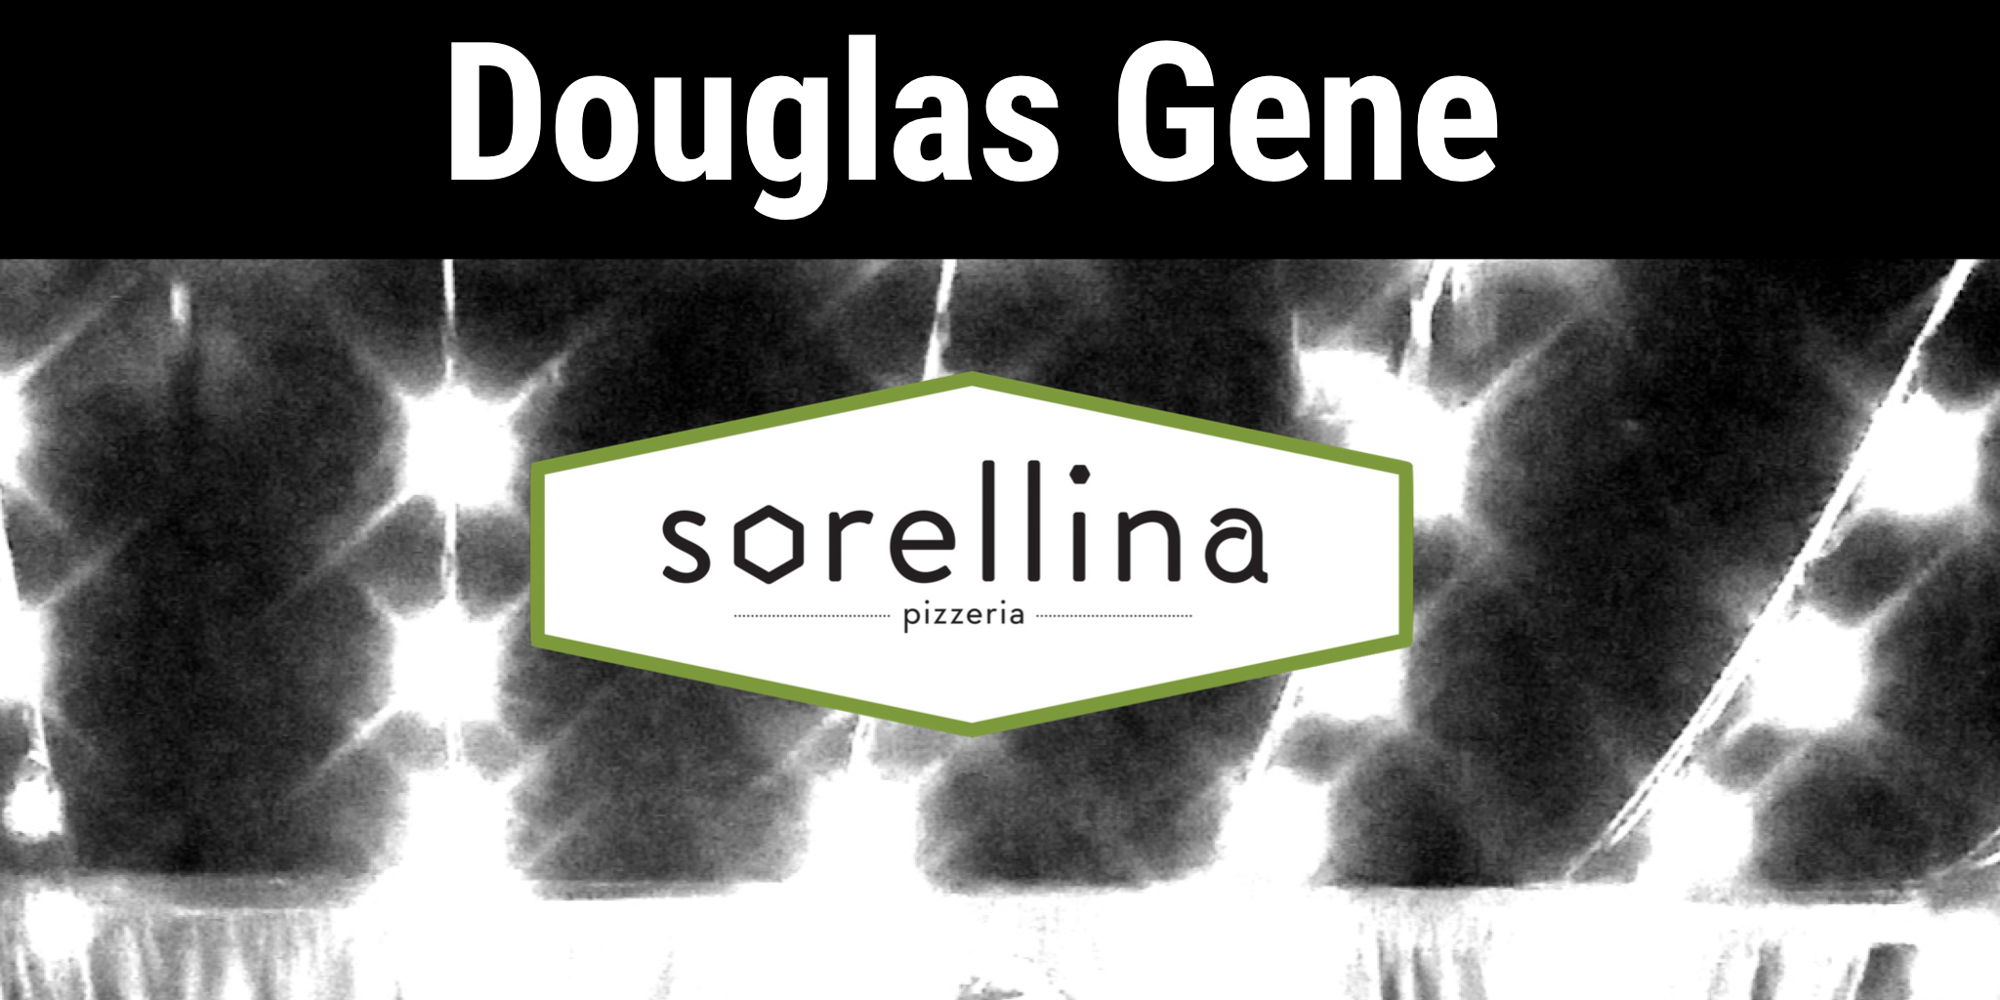 Douglas Gene promotional image